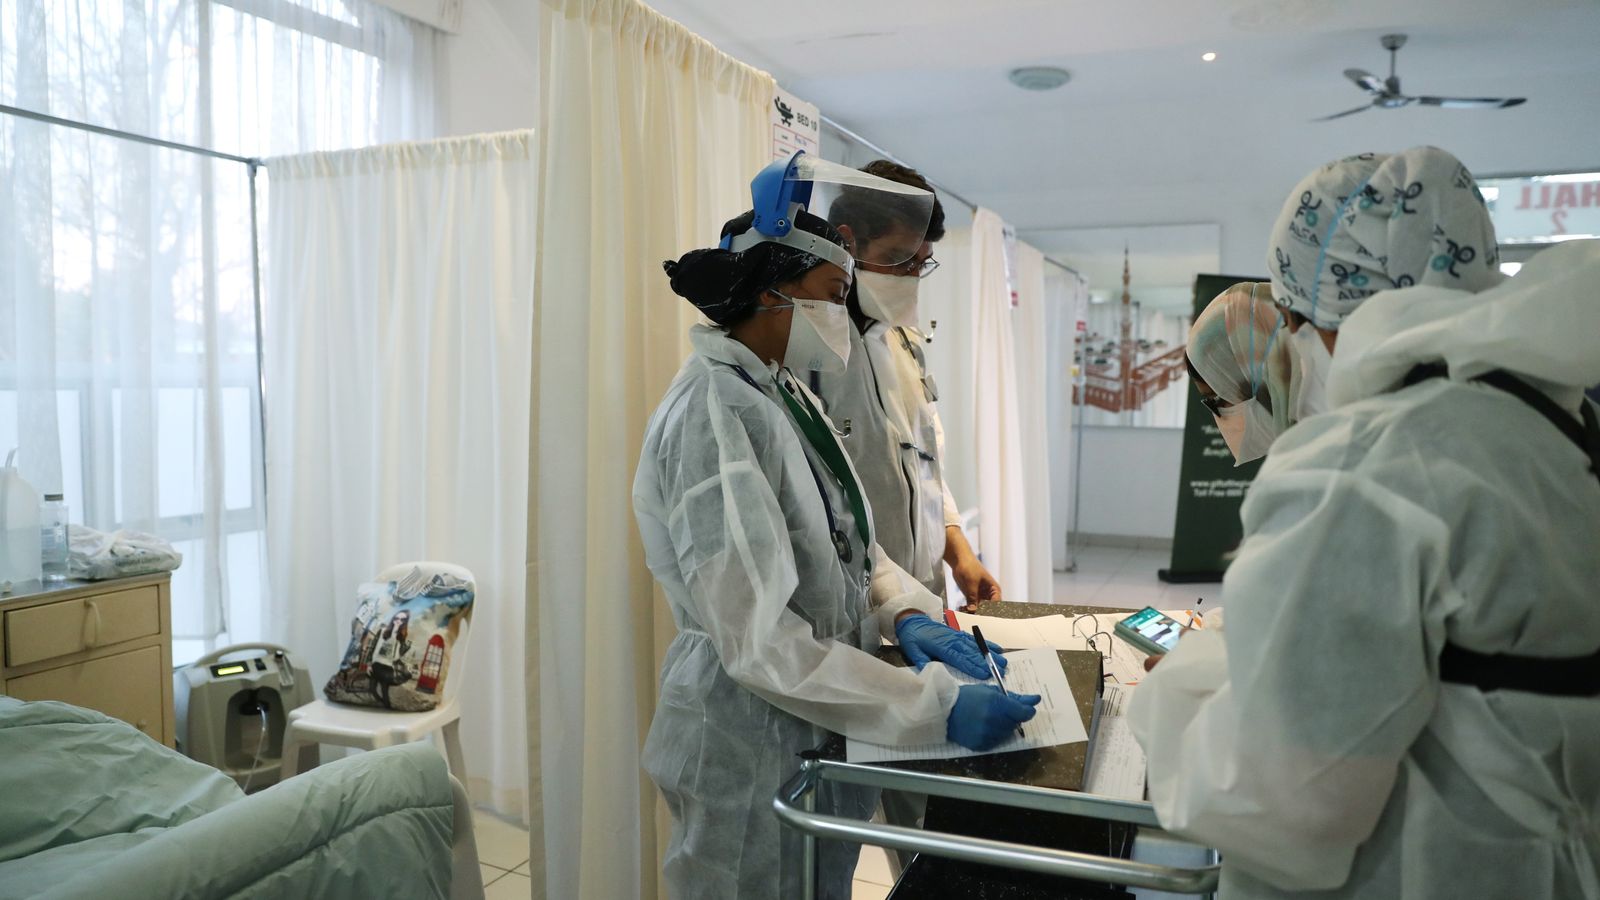 Afrika Selatan melihat peningkatan penerimaan rumah sakit COVID anak di pusat gempa Omicron tetapi kasusnya ‘ringan’ |  Berita Dunia